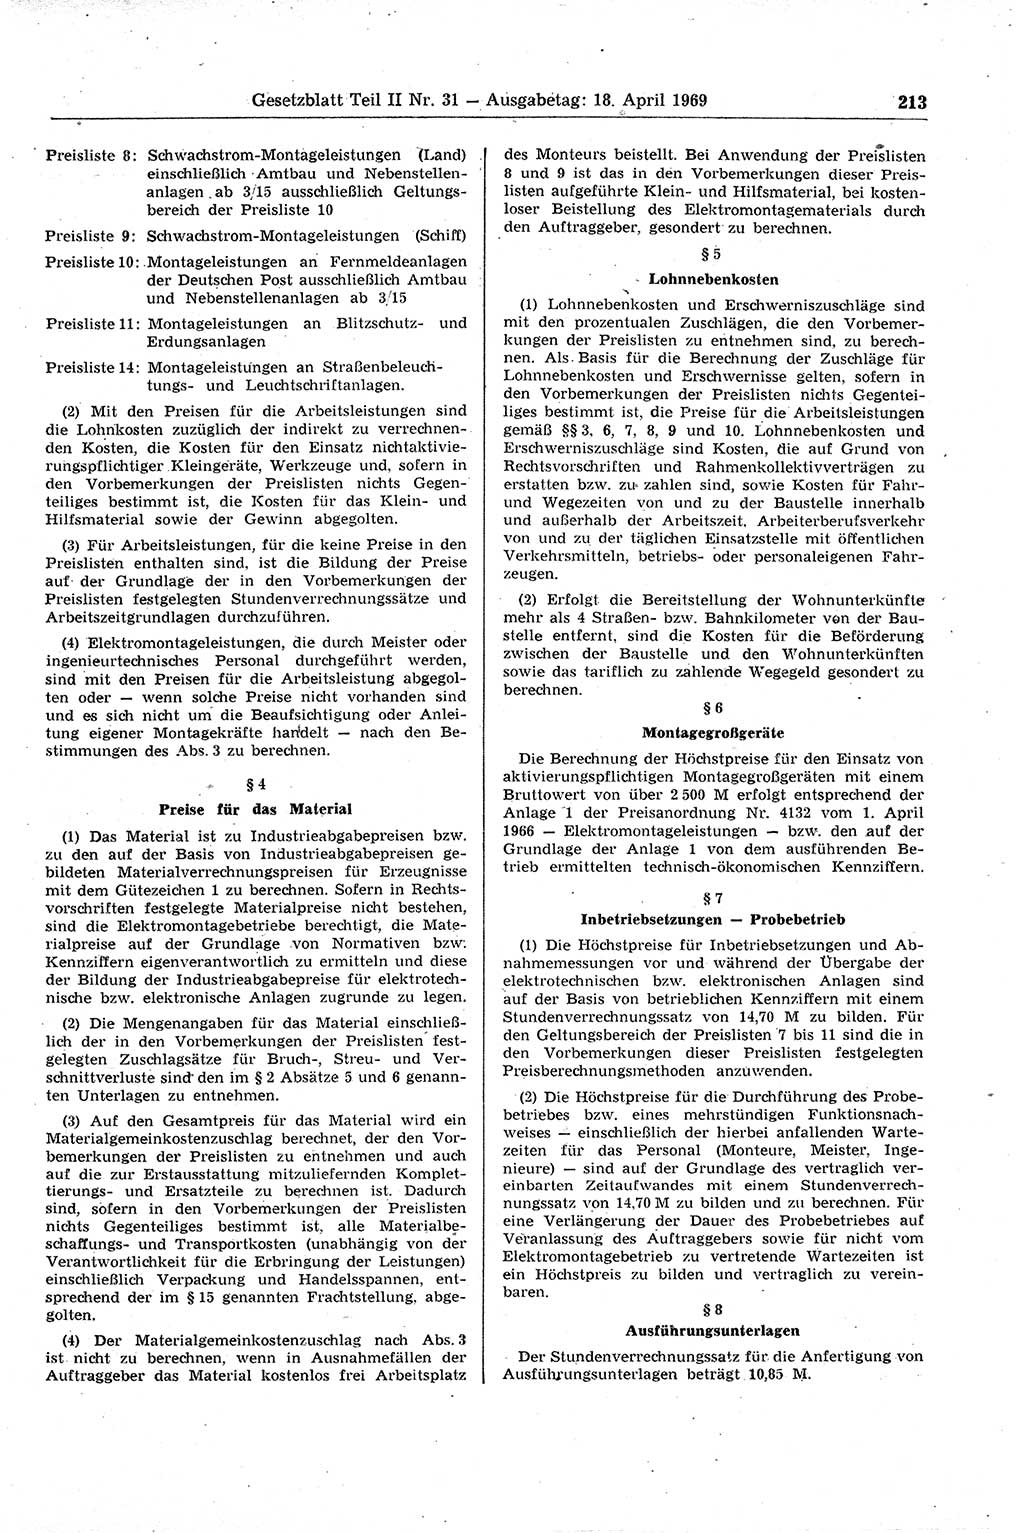 Gesetzblatt (GBl.) der Deutschen Demokratischen Republik (DDR) Teil ⅠⅠ 1969, Seite 213 (GBl. DDR ⅠⅠ 1969, S. 213)